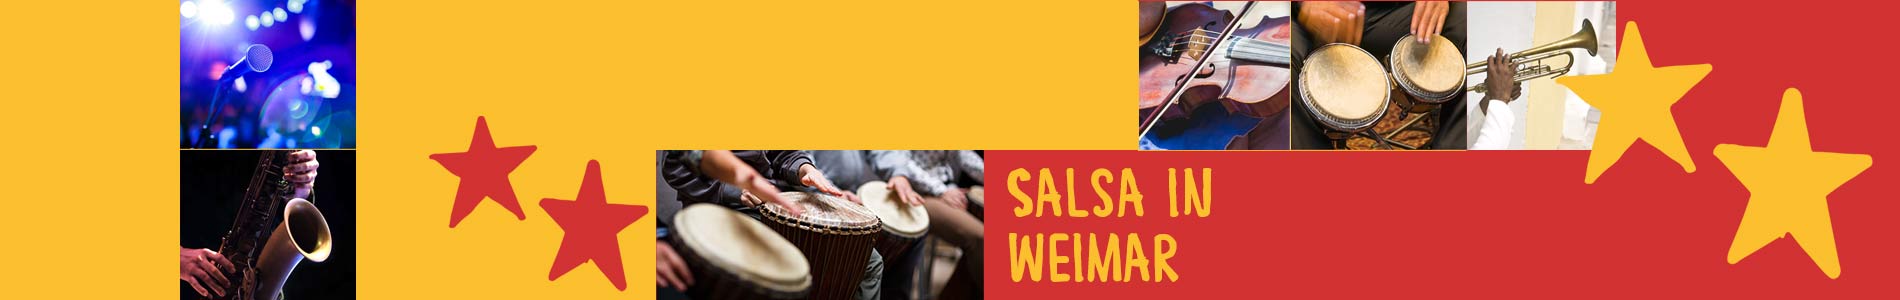 Salsa in Weimar – Salsa lernen und tanzen, Tanzkurse, Partys, Veranstaltungen